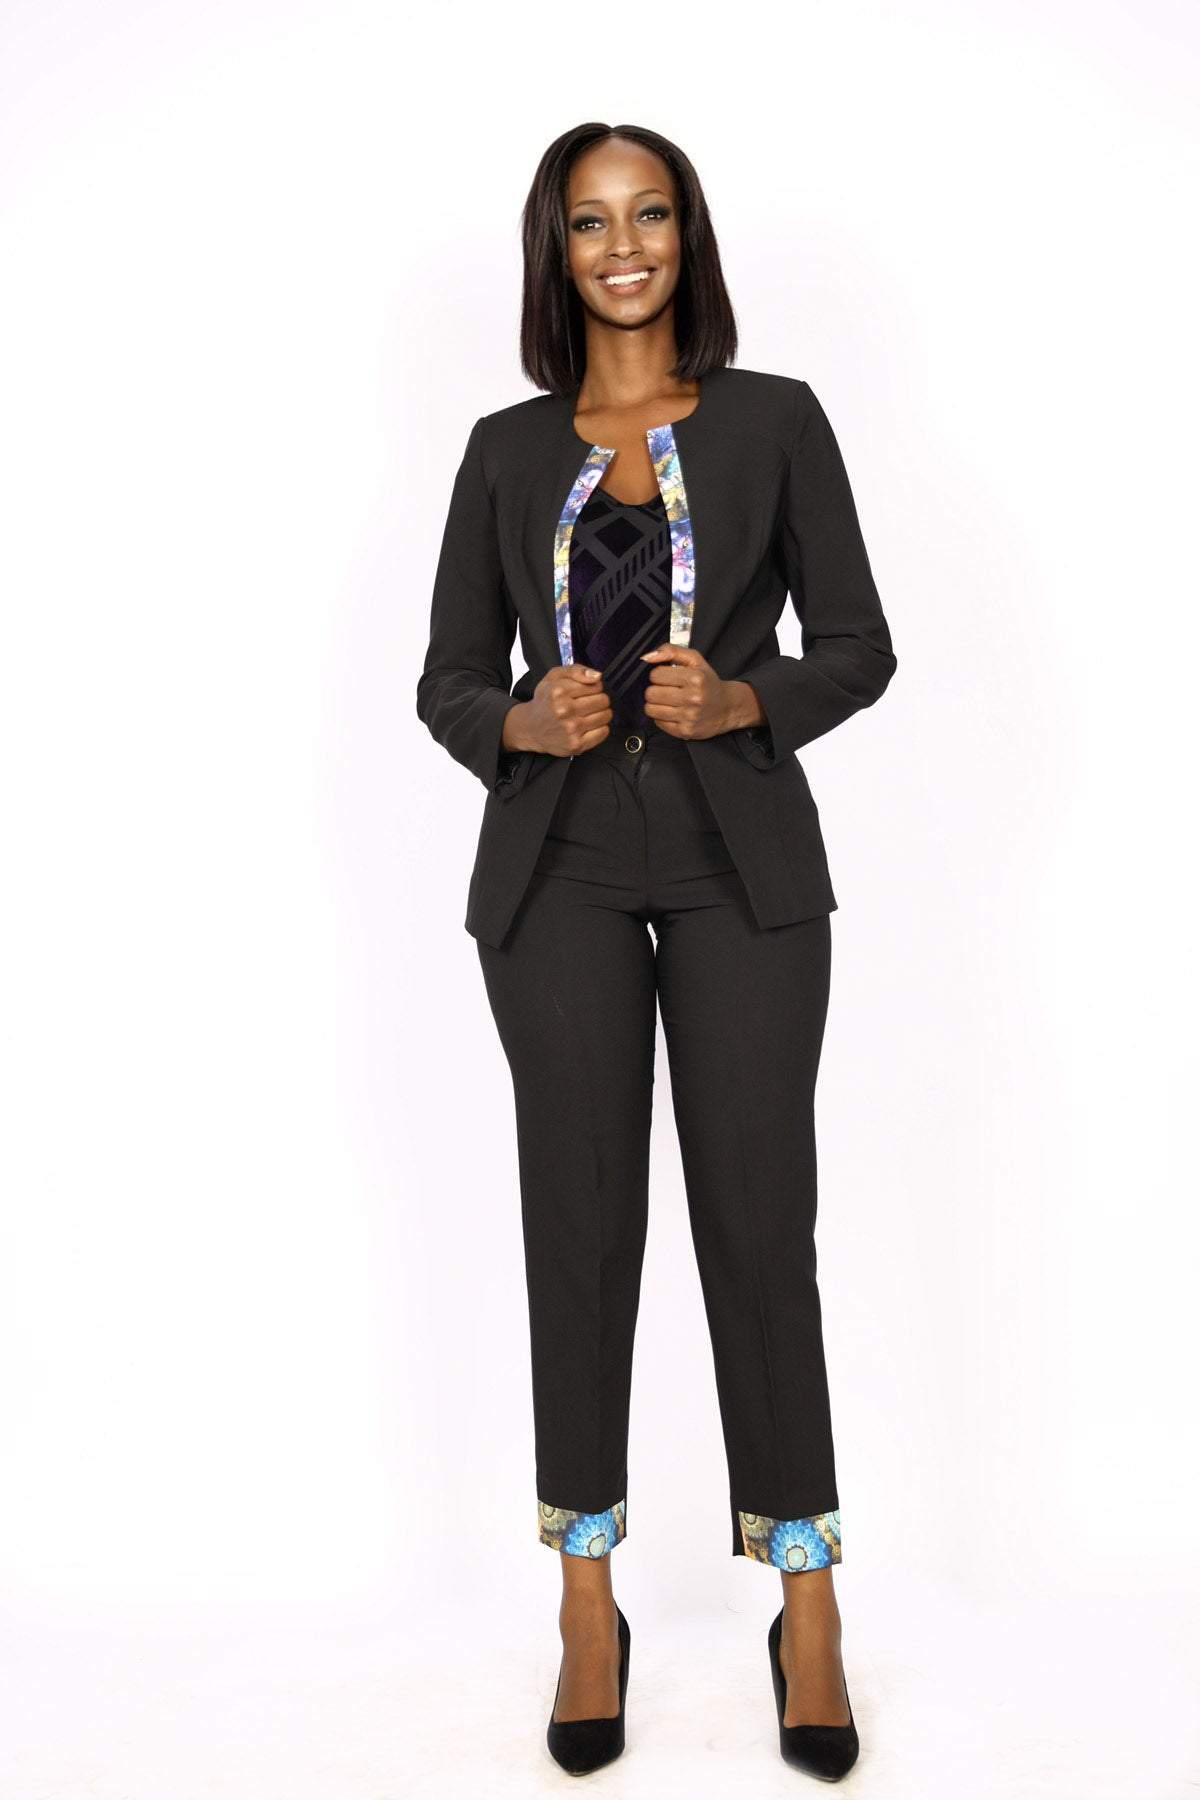 black business woman suit